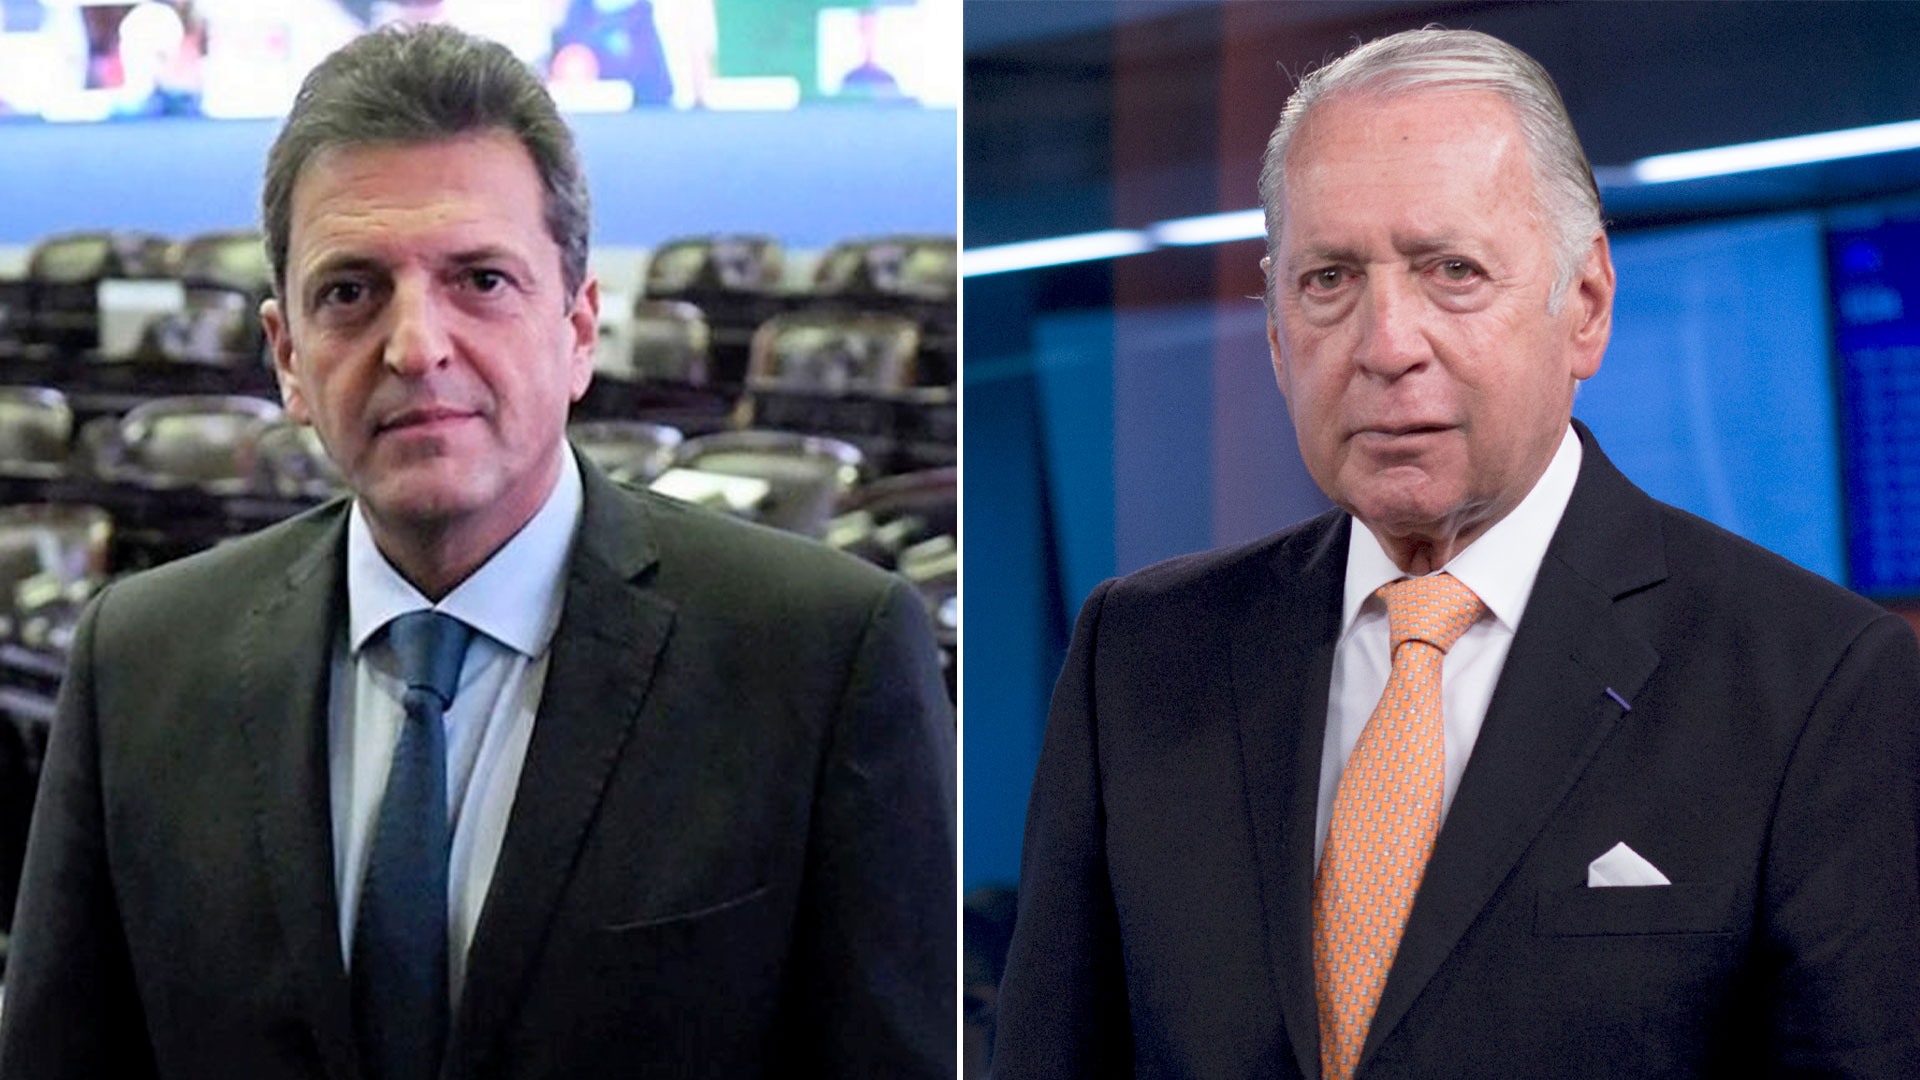 El ministro de Economía, Sergio Massa, se reunirá hoy con la cúpula de la UIA presidida por Daniel Funes de Rioja